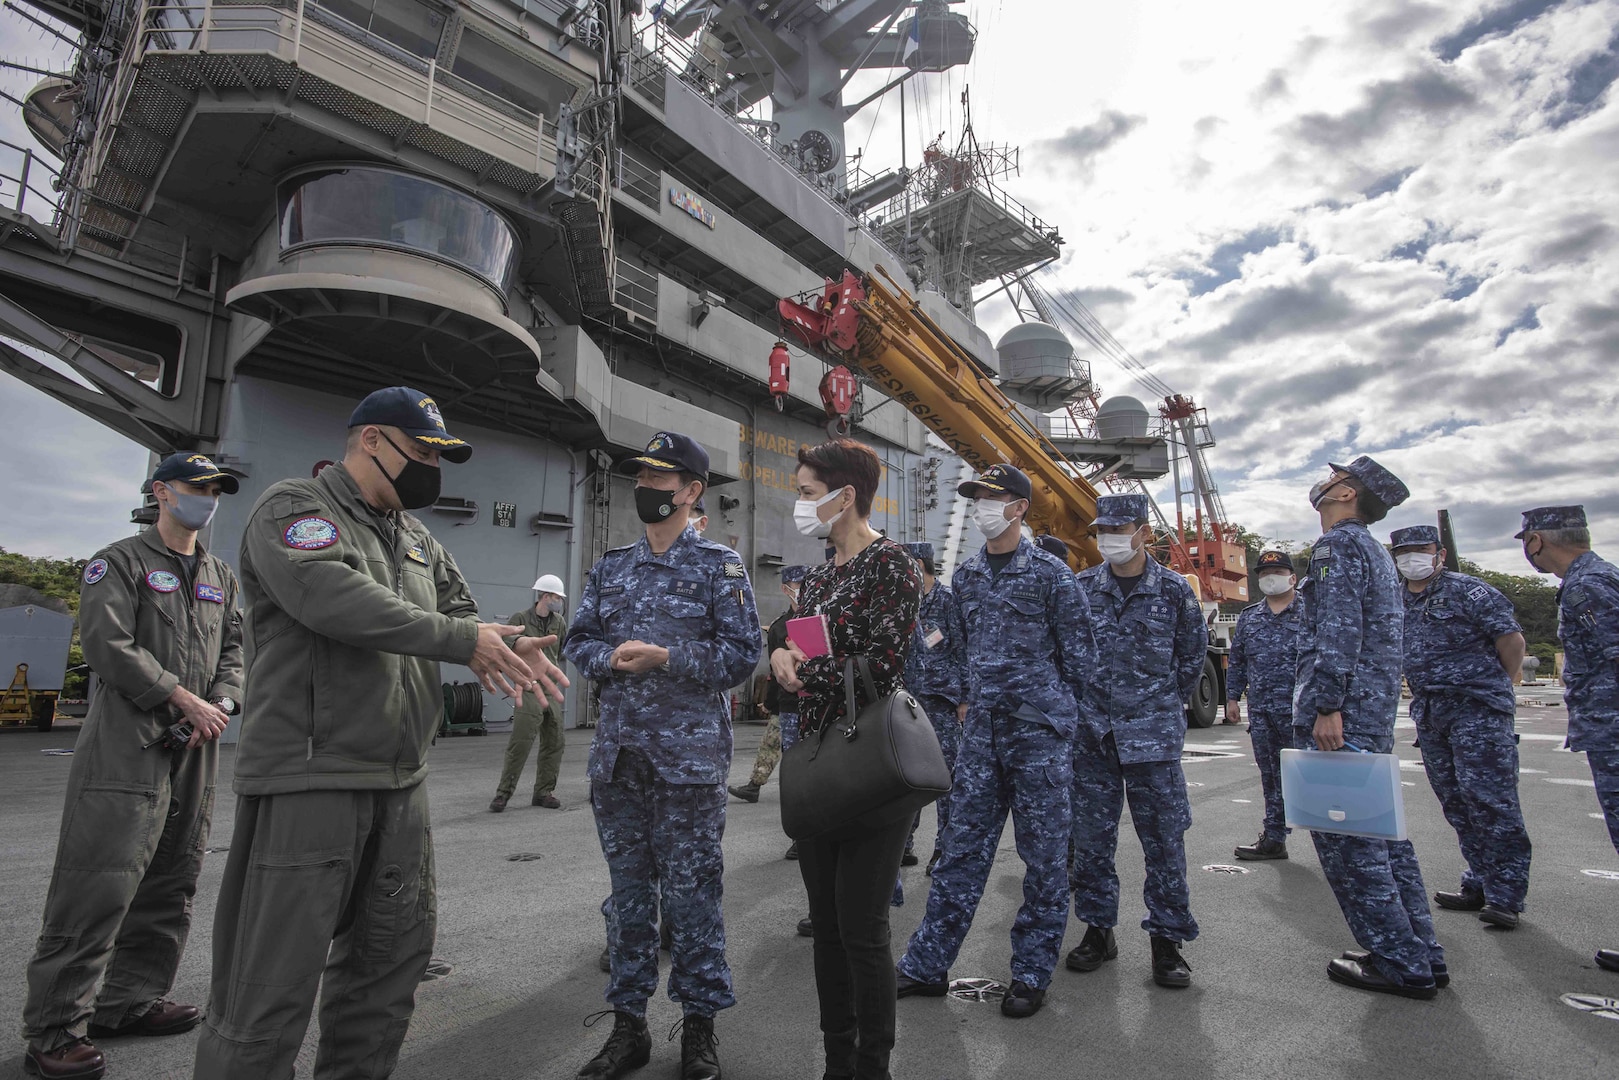 U.S. Navy, Japan Conduct Staff Talks aboard USS Ronald Reagan